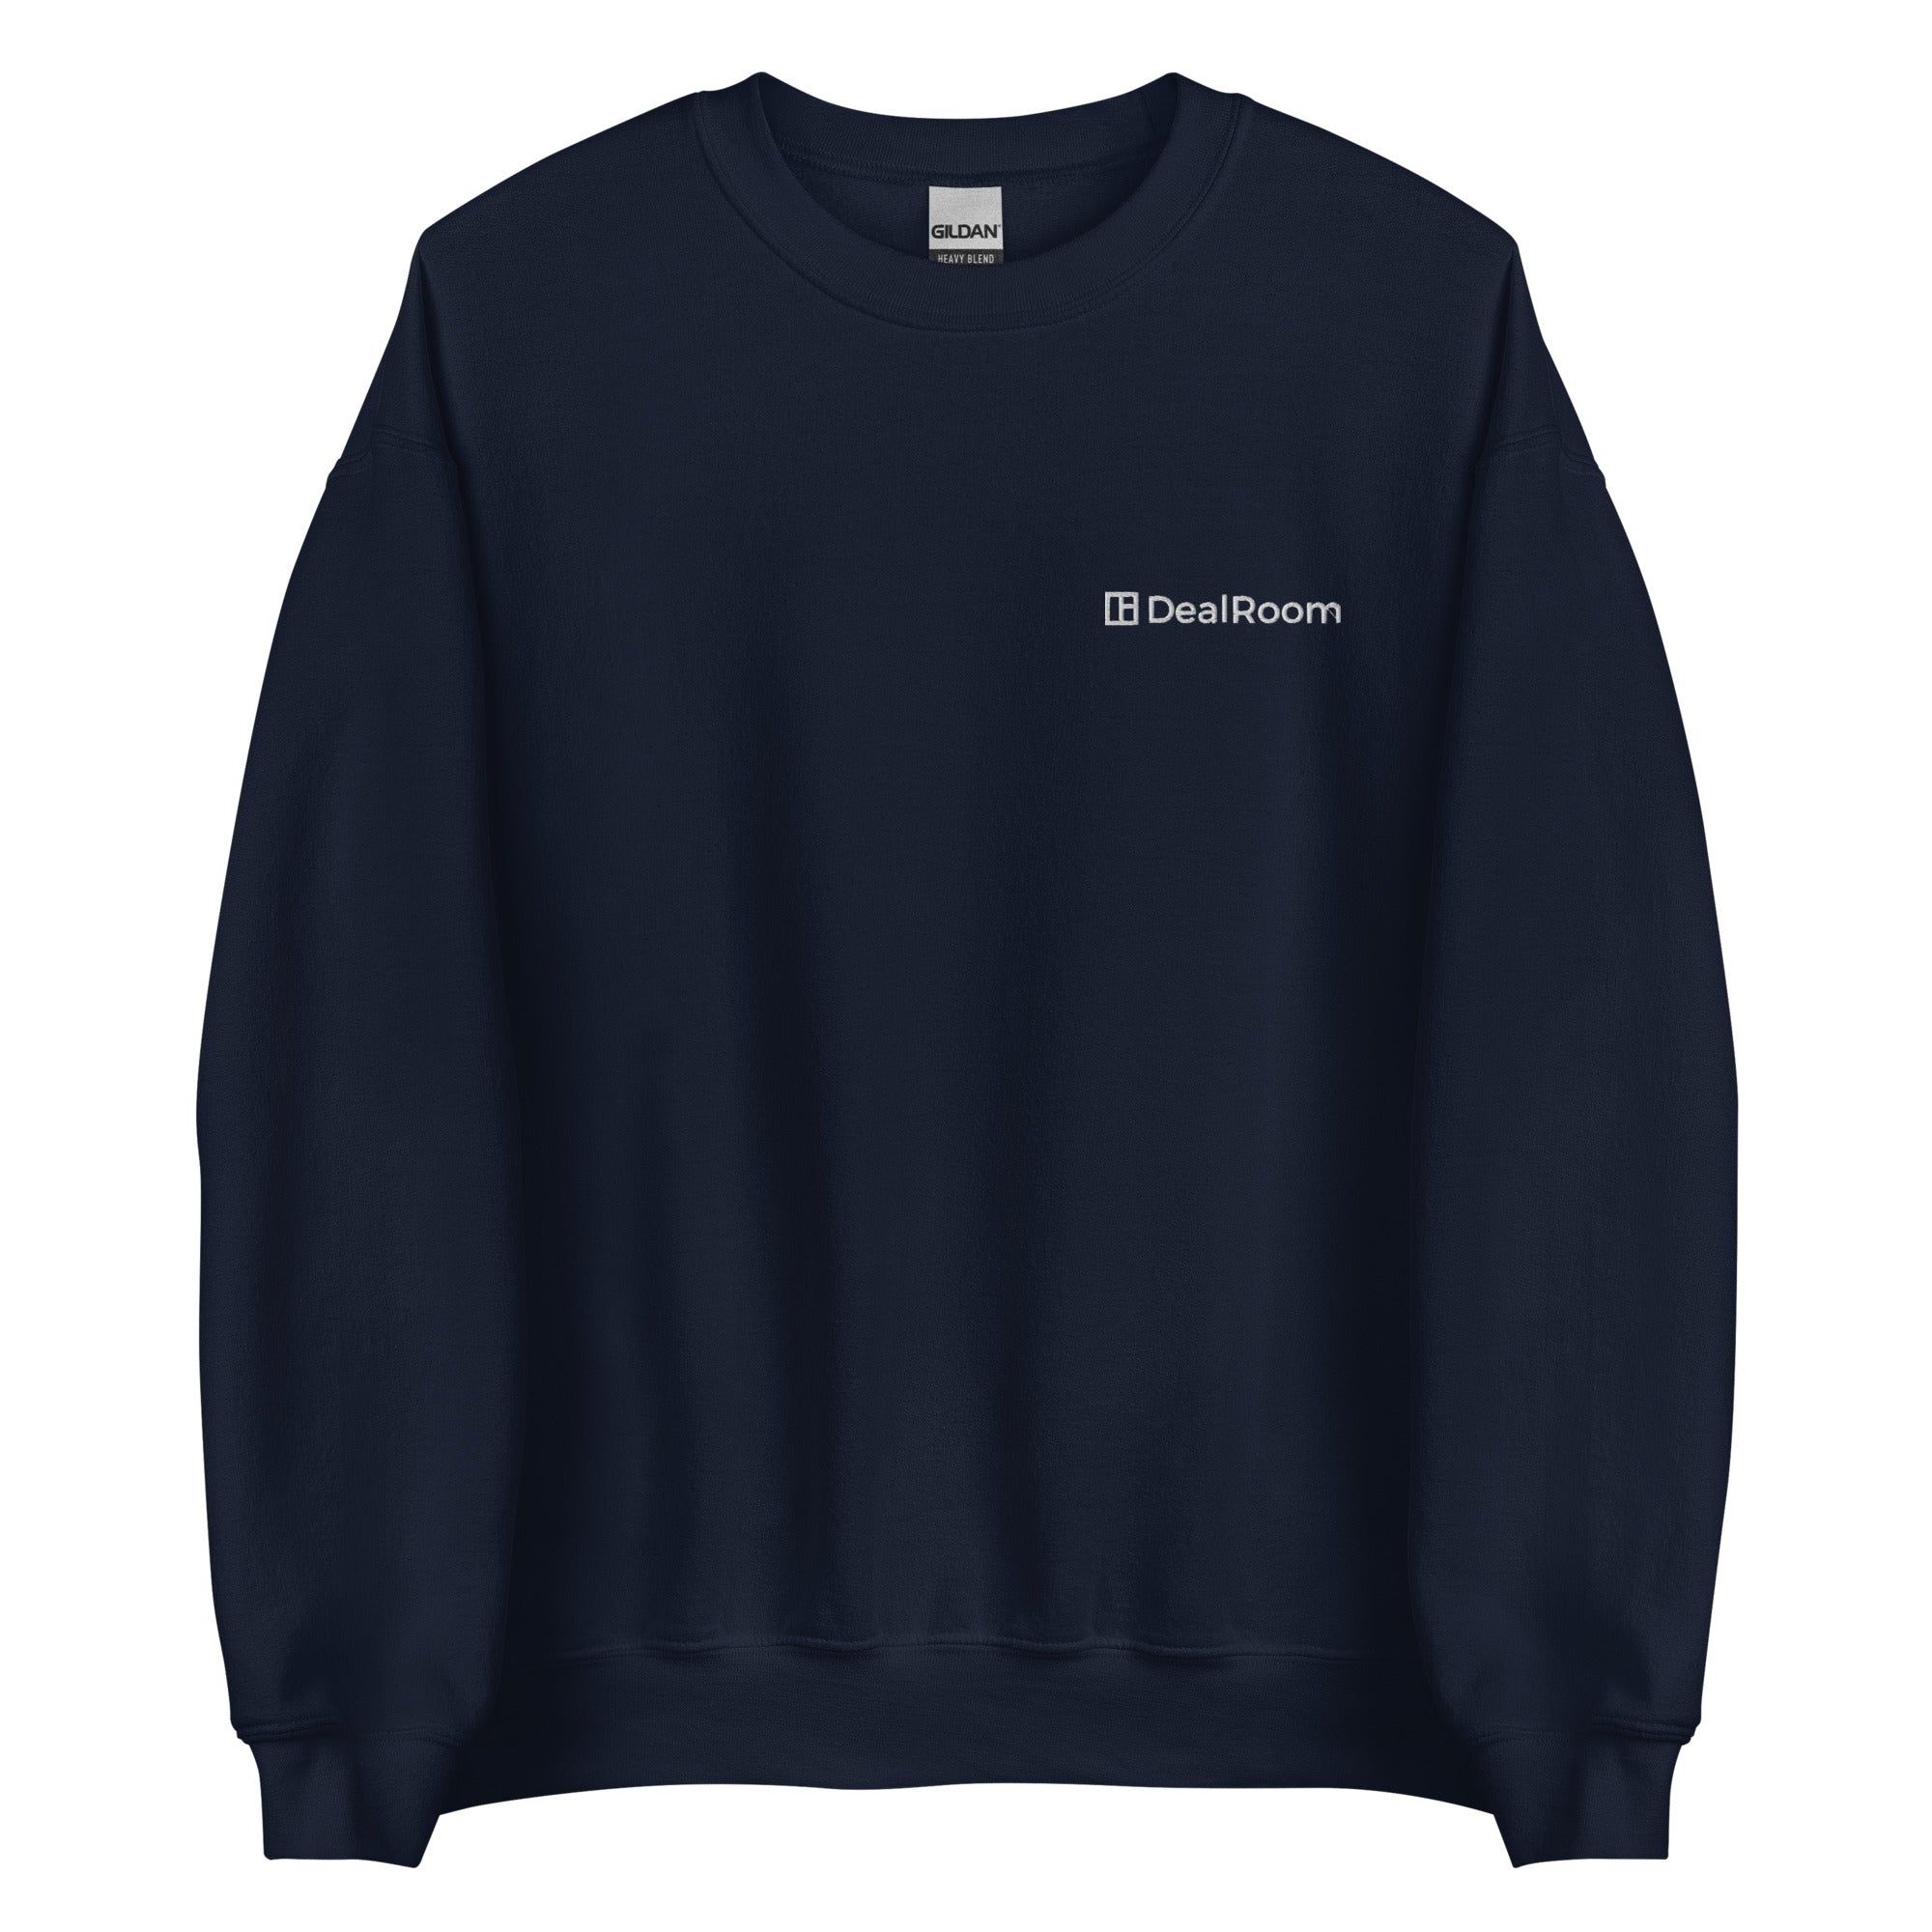 DealRoom Unisex Sweatshirt